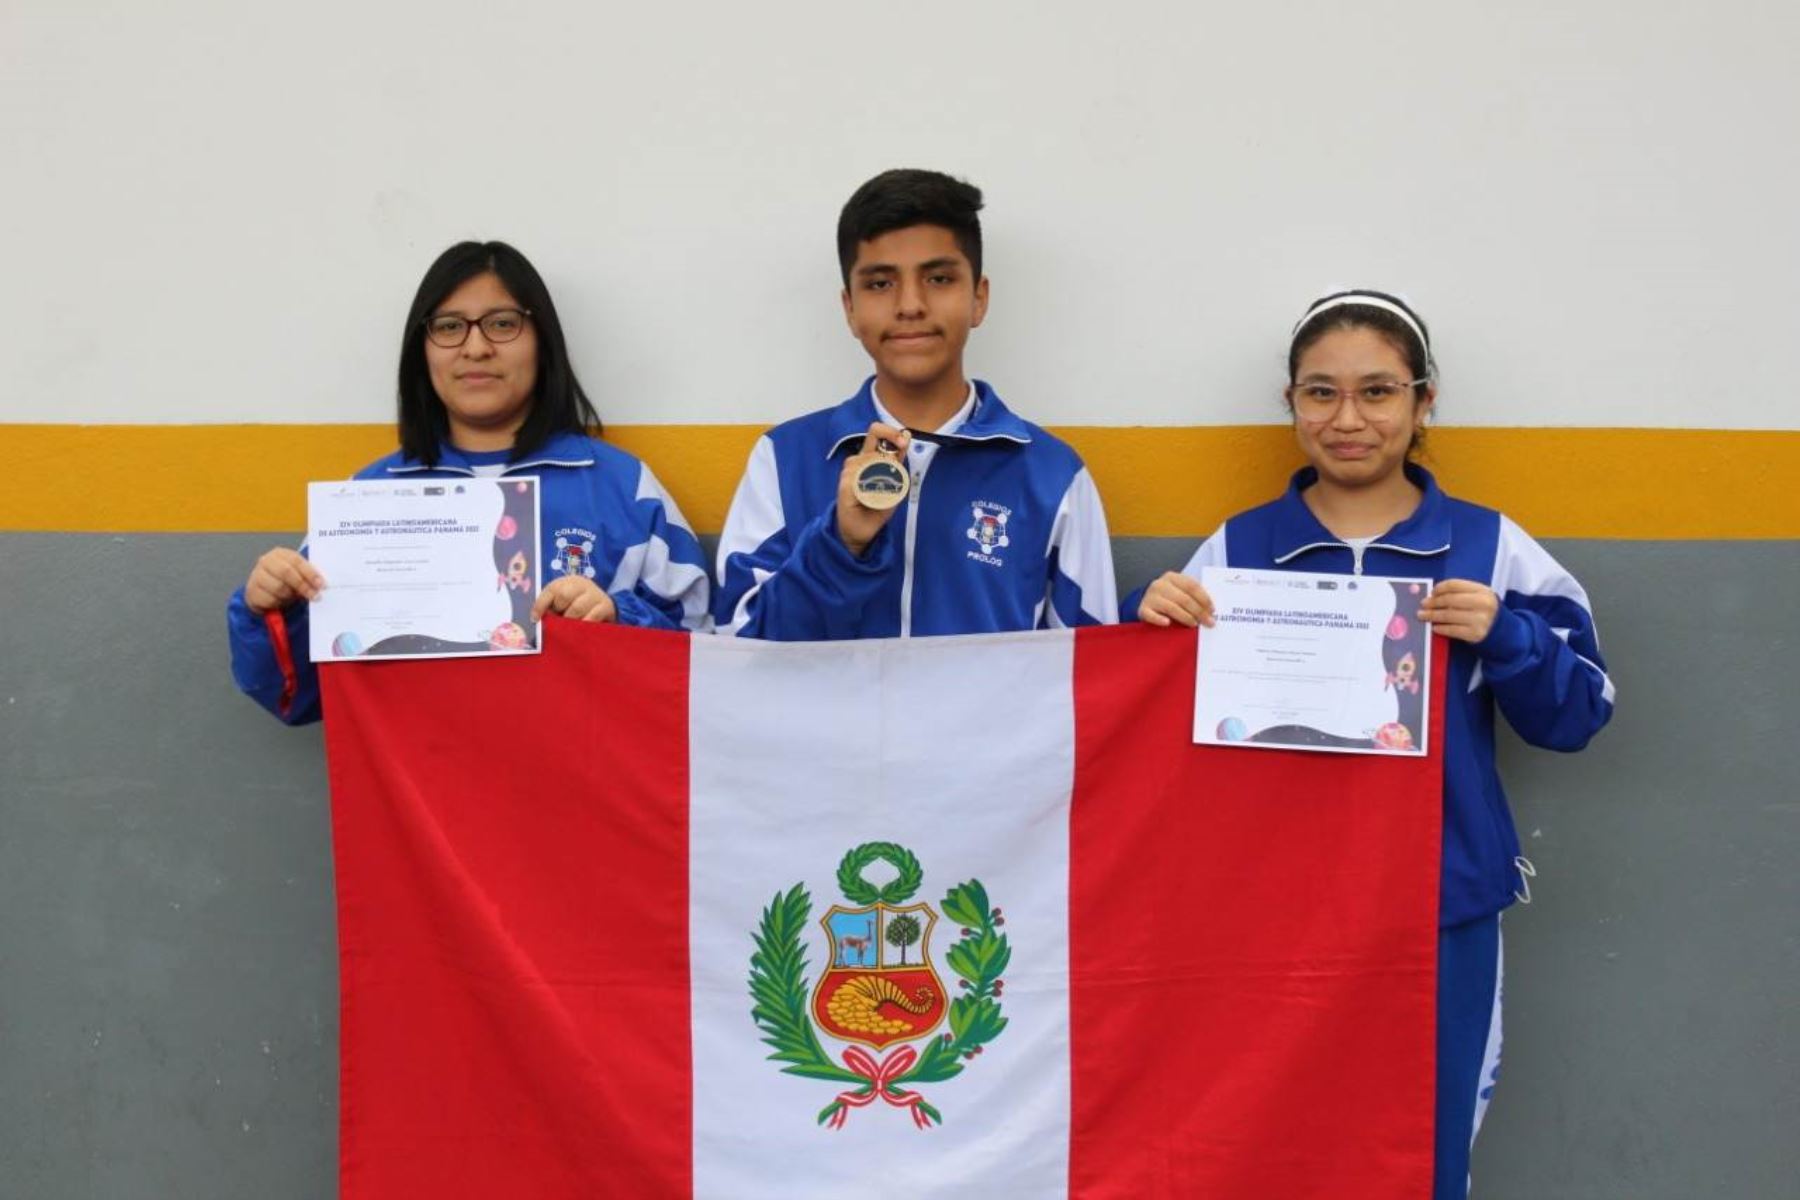 Escolares de Villa María del Triunfo, Chorrillos y Huacho triunfaron en la XIV Olimpiada Latinoamericana de Astronomía y Astronáutica, el evento escolar de ciencias espaciales más grande del continente.